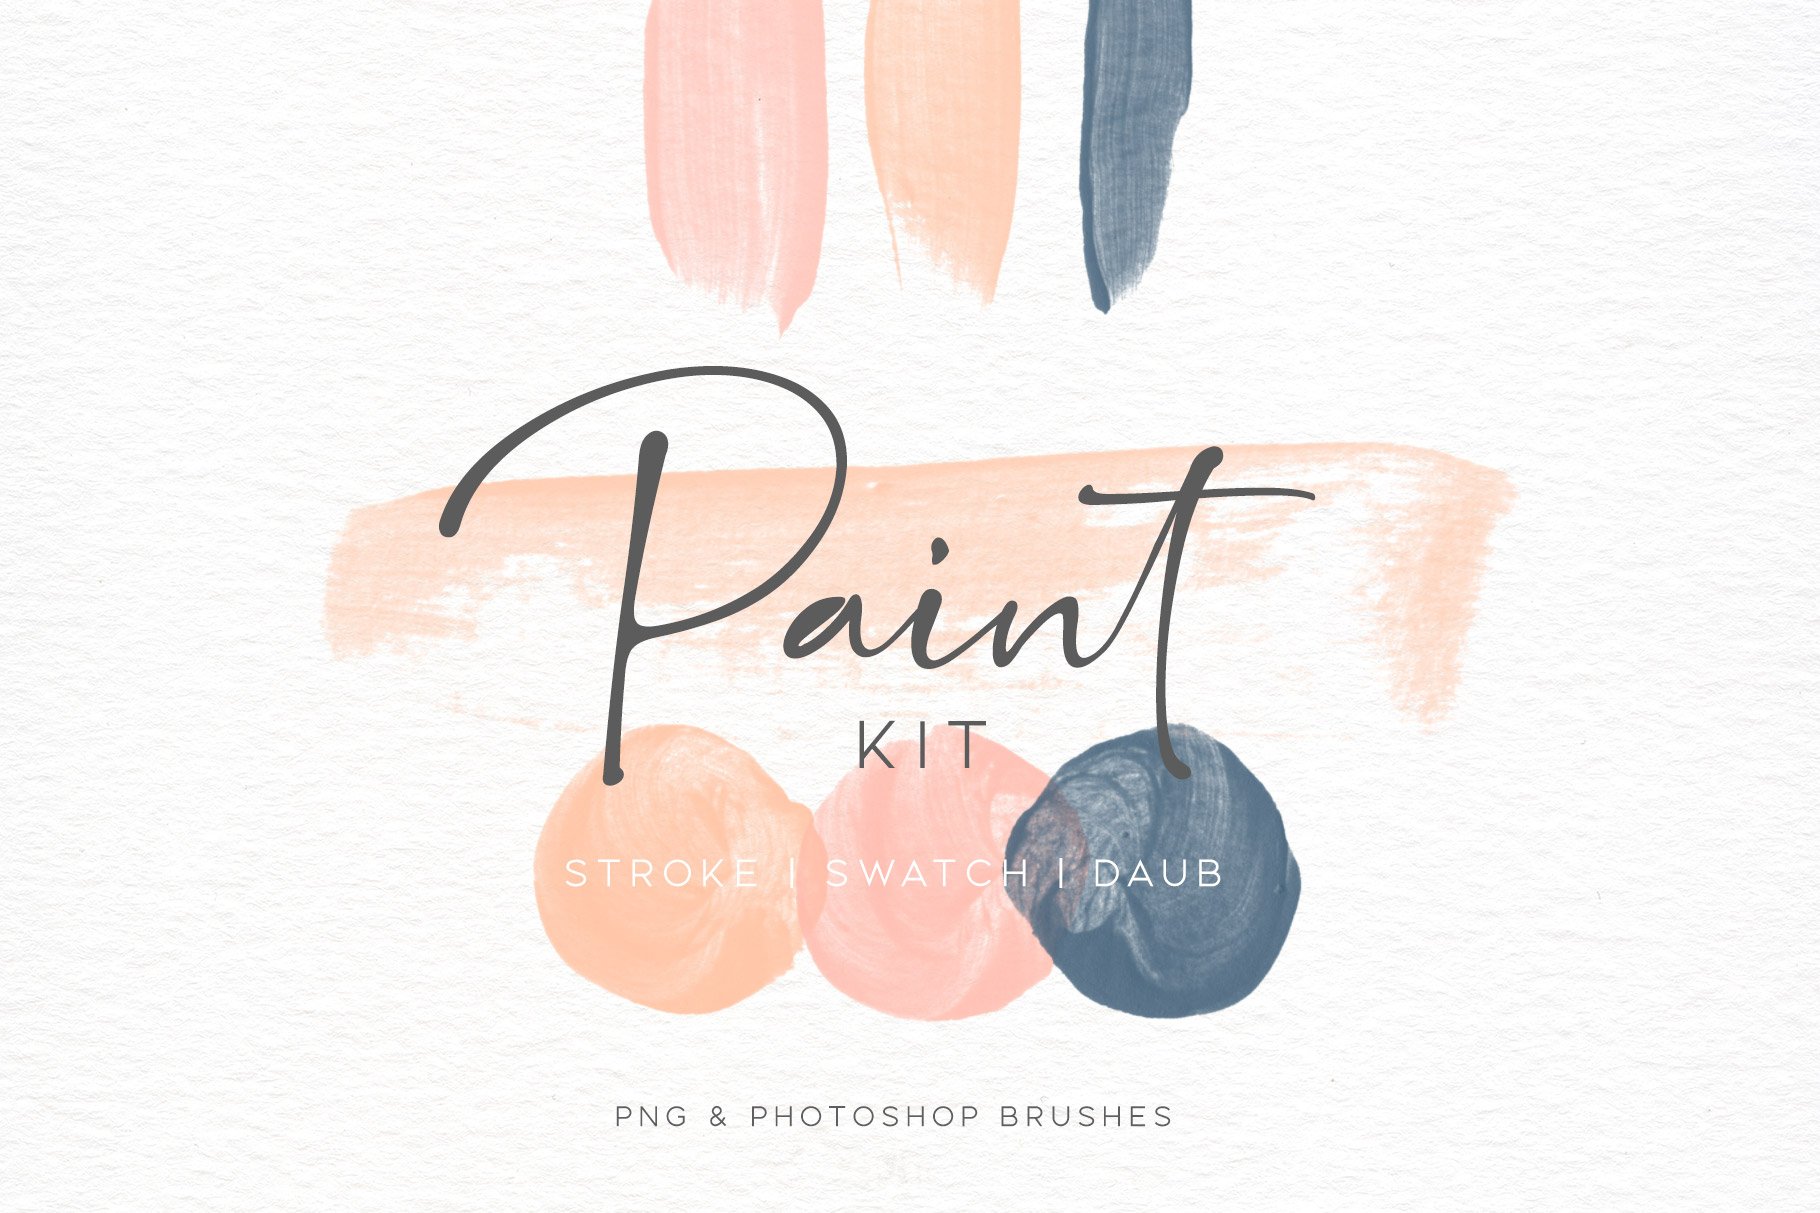 Paint Swatch and Daub Brush Kit